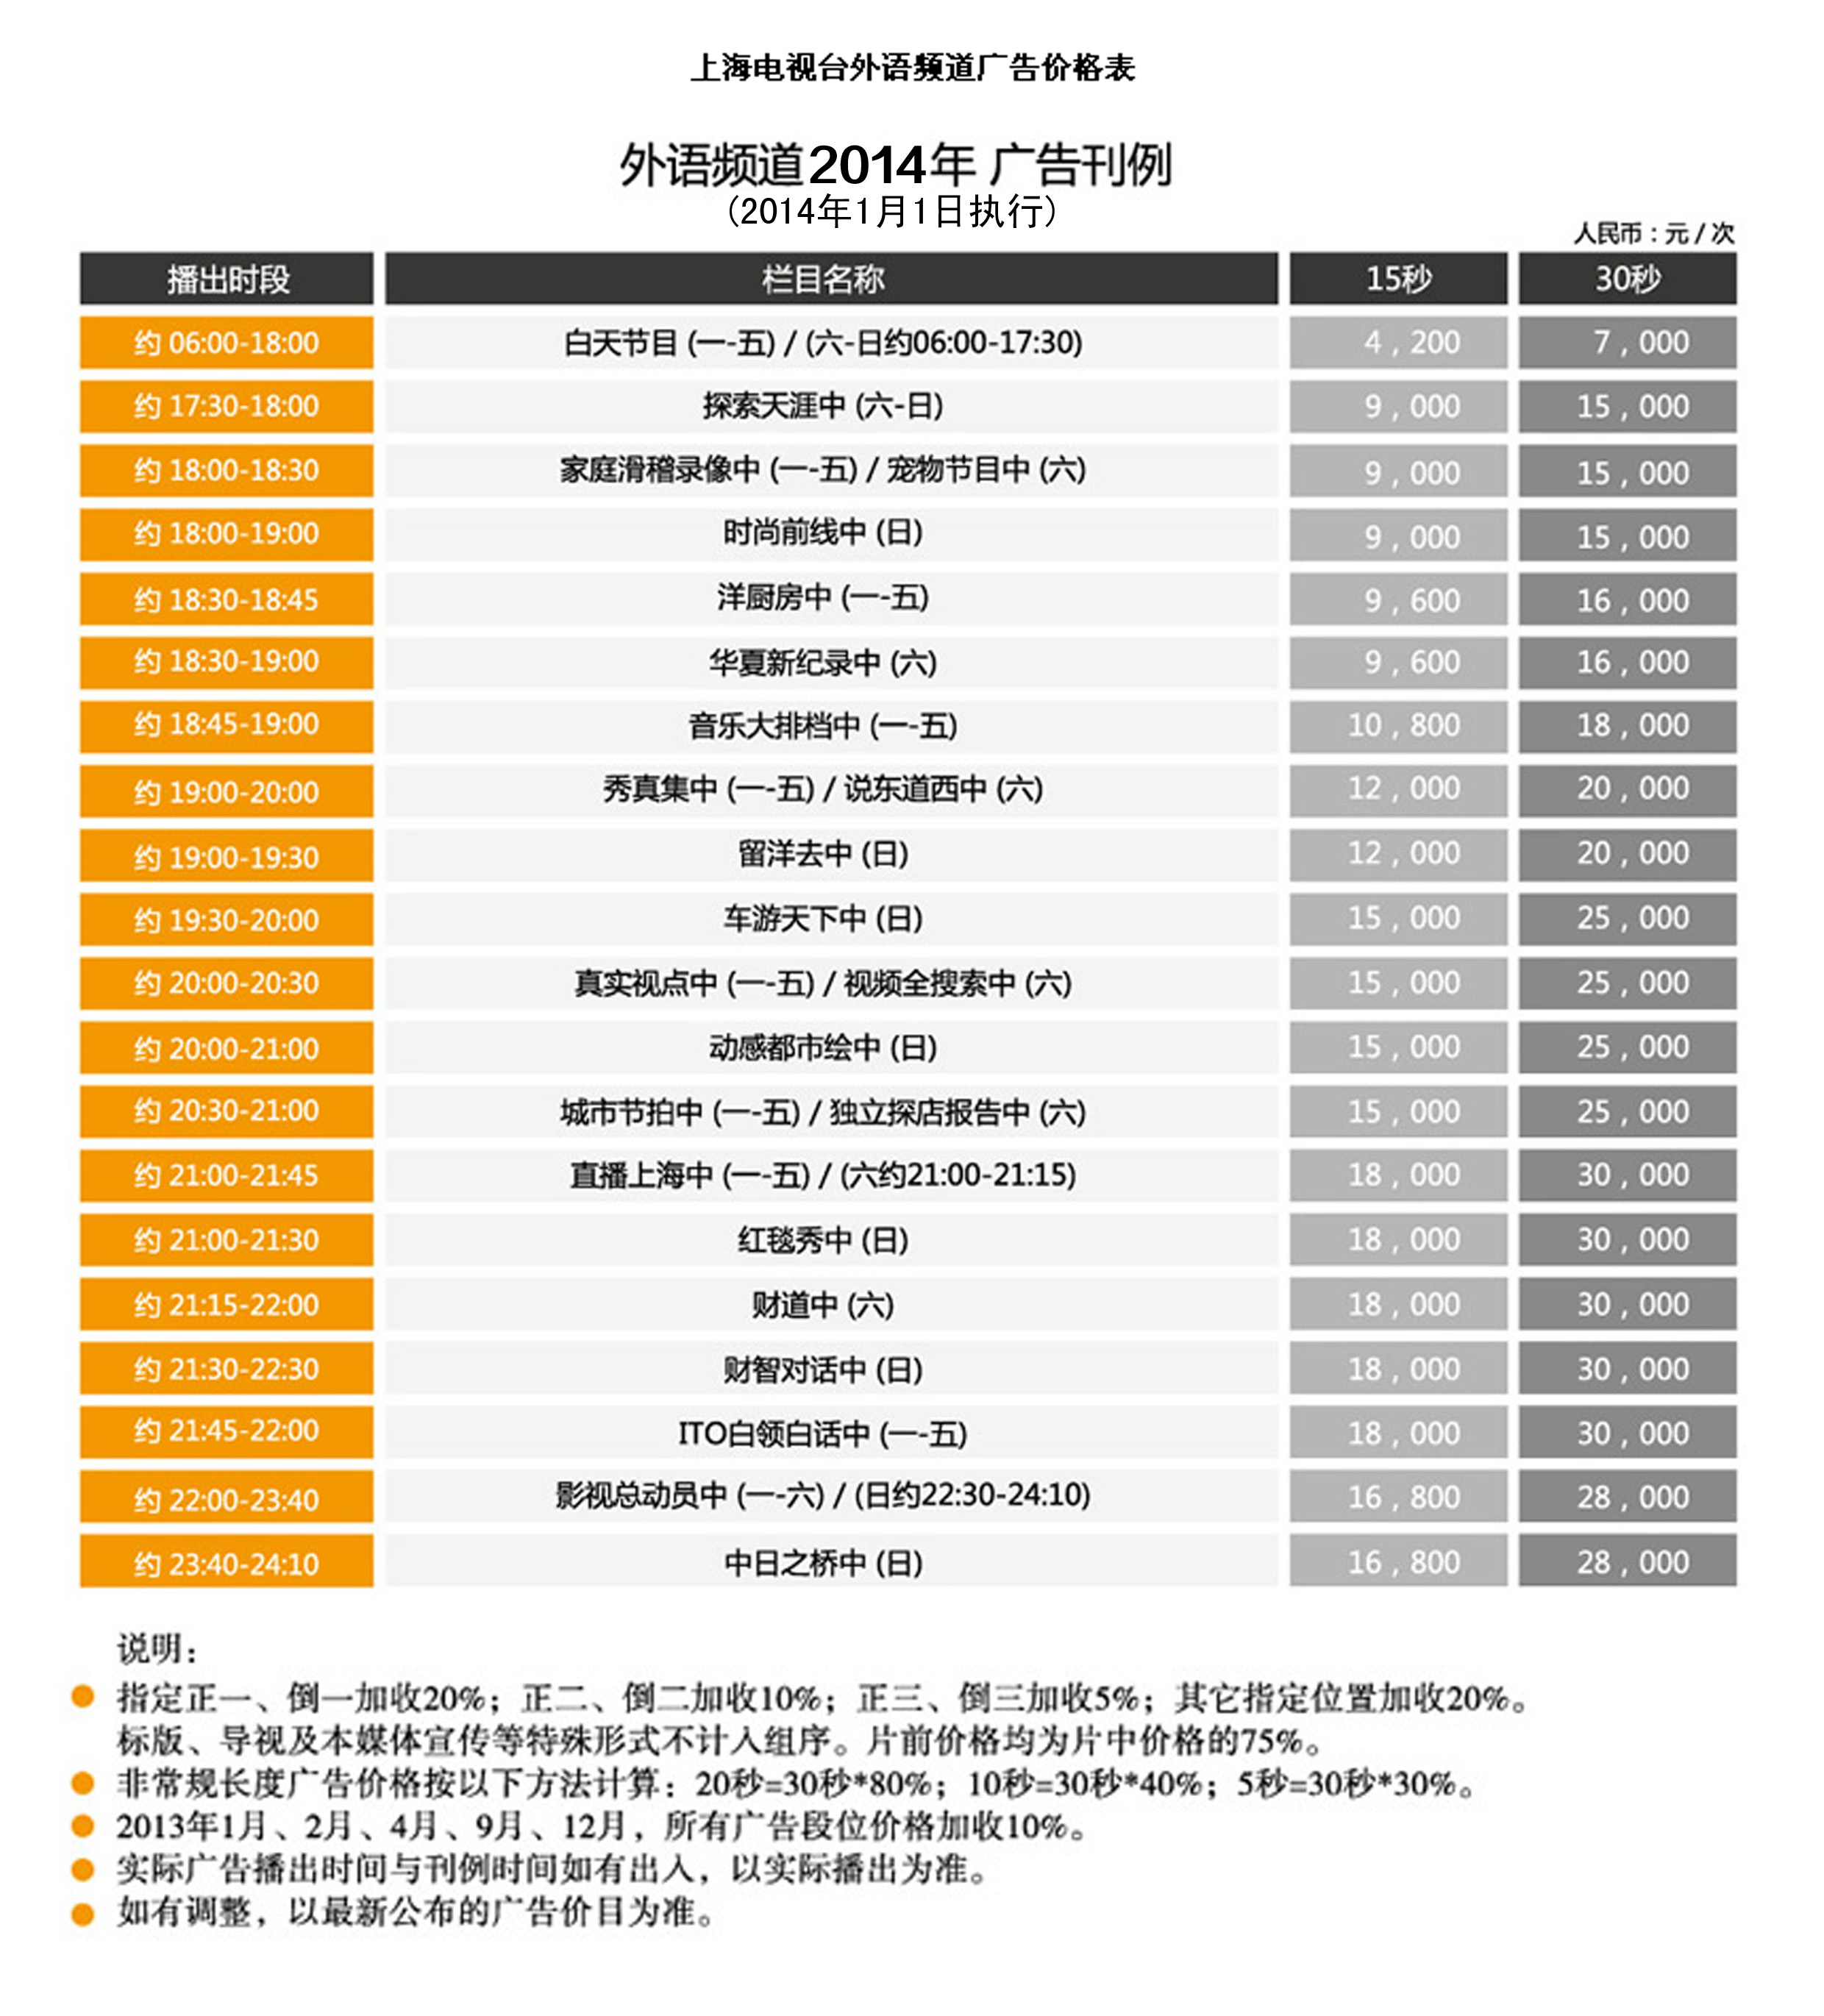 2015上海电视台上海外语频道广告价格表